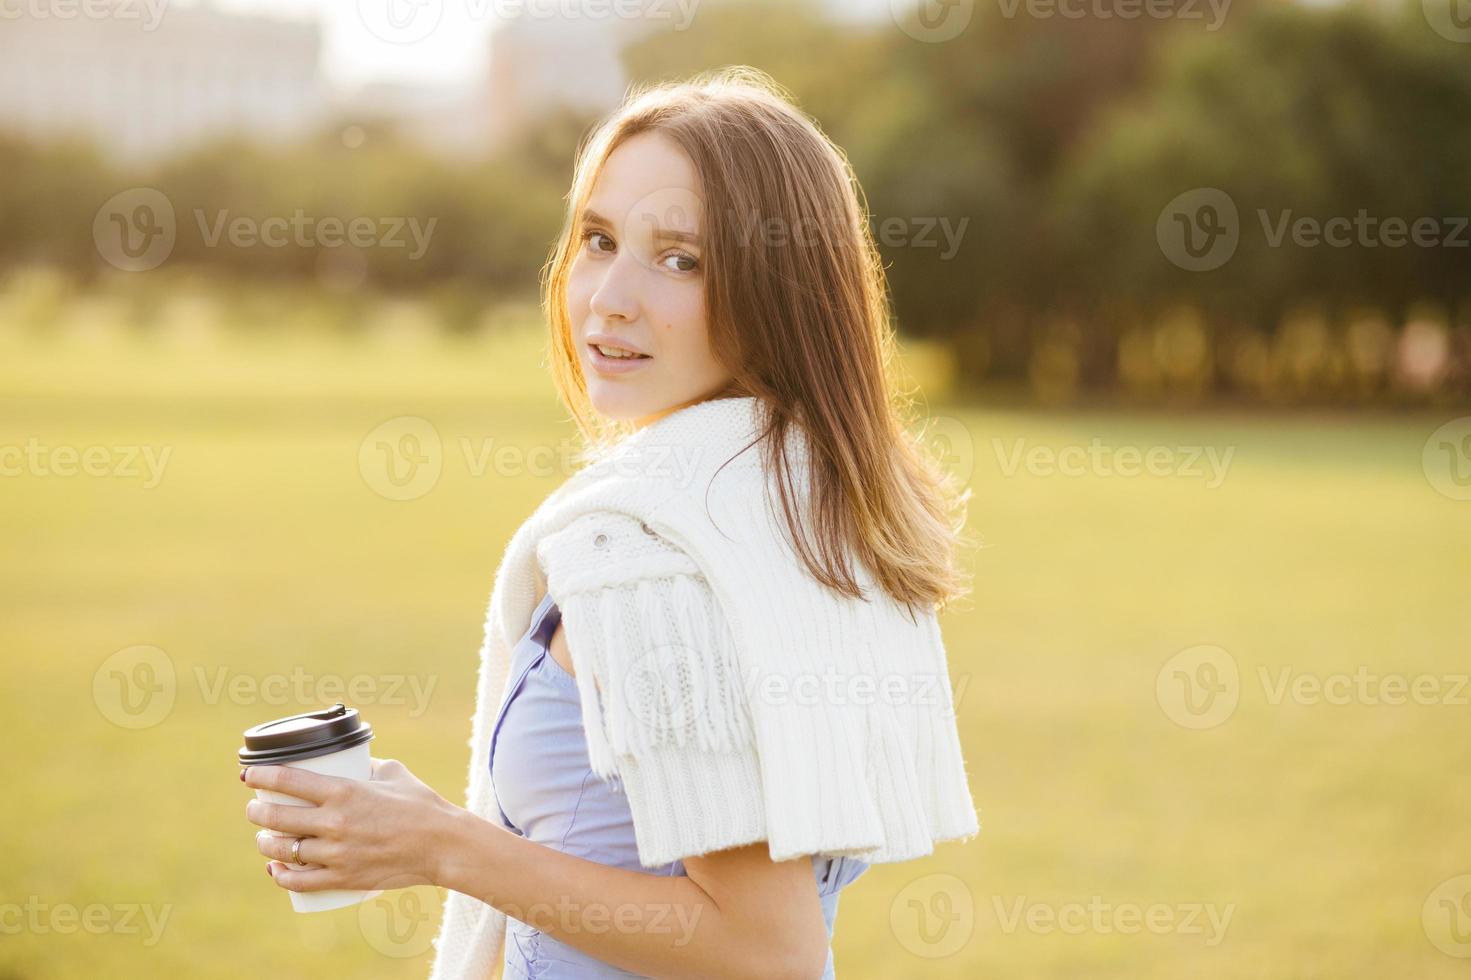 photo latérale d'une jolie jeune fille au har sombre, tient une tasse de café ou de cappuccino, respire de l'air frais, profite d'une atmosphère calme, admire la belle nature et le coucher du soleil. concept de personnes et de style de vie